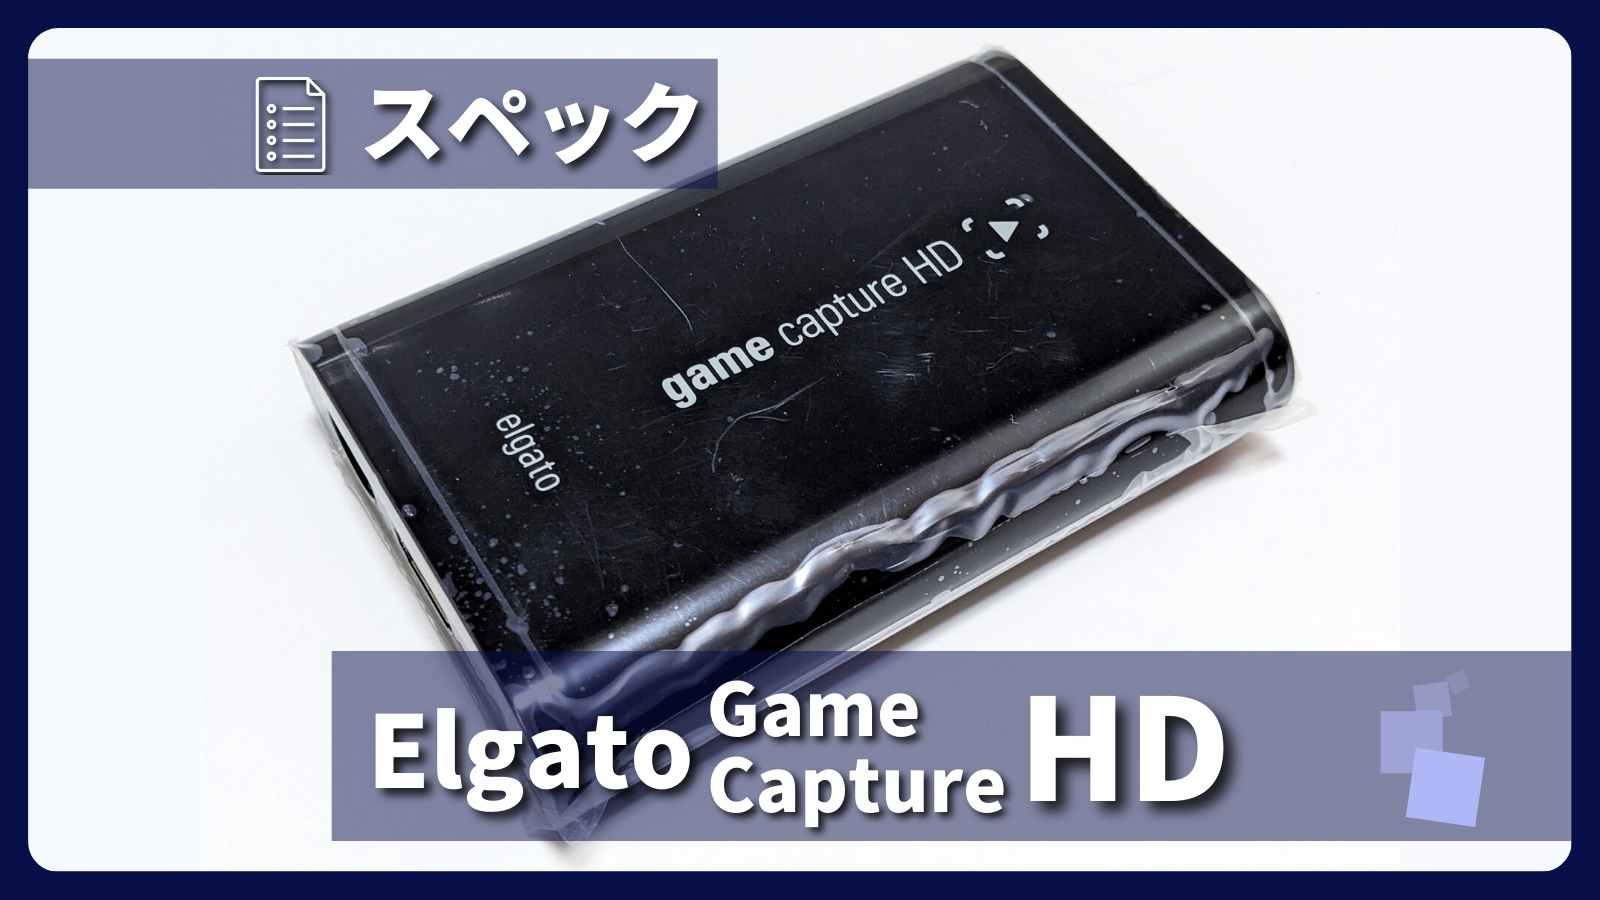 アイキャッチ画像・Elgato Game Capture HD スペック紹介